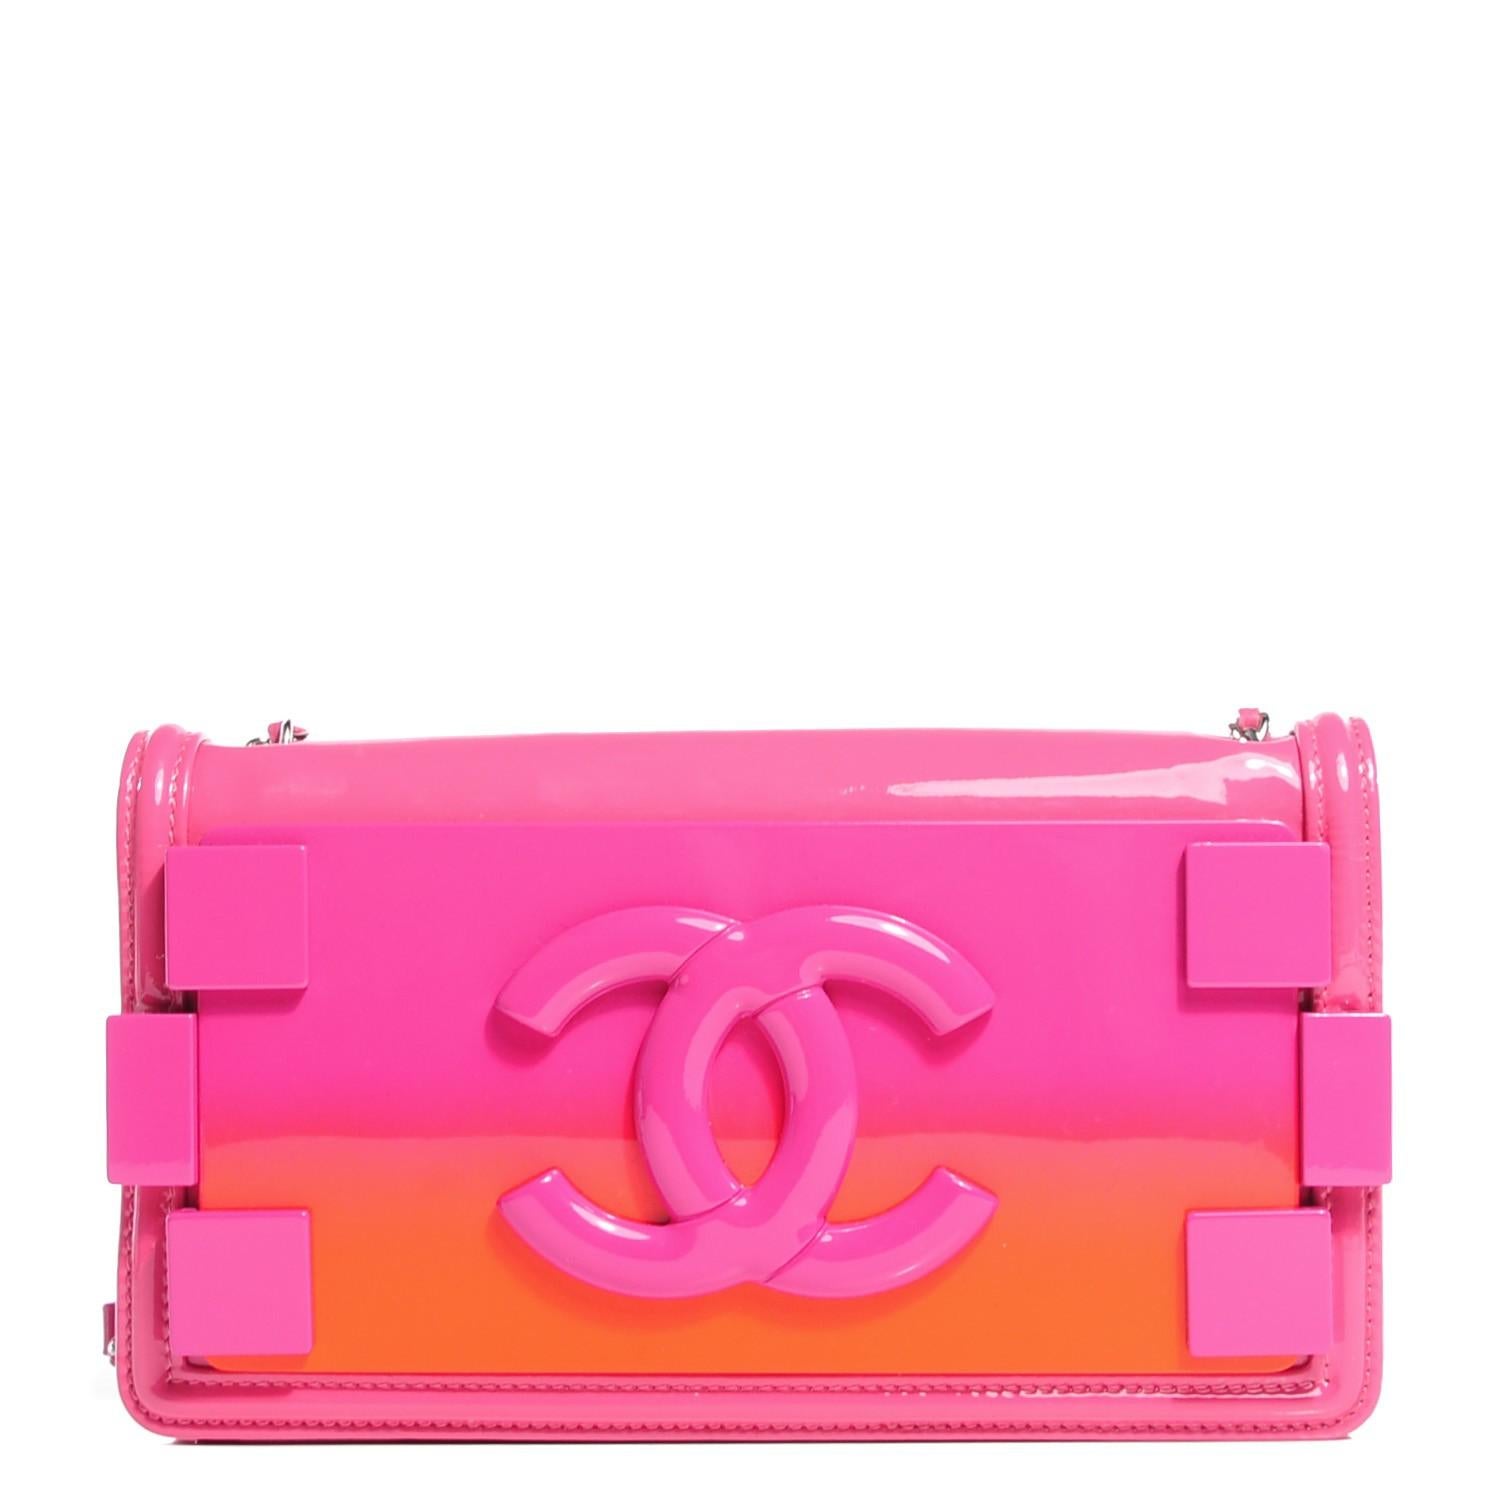 Chanel Laufsteg limitierte Auflage rosa Lackleder lego brick Klappe

Jahr: 2014
Silberne Hardware
Ein zentriertes Kreditkartenfach
Rosa Nylonfutter
Klassische Gesäßtasche
Riemen Drop 24